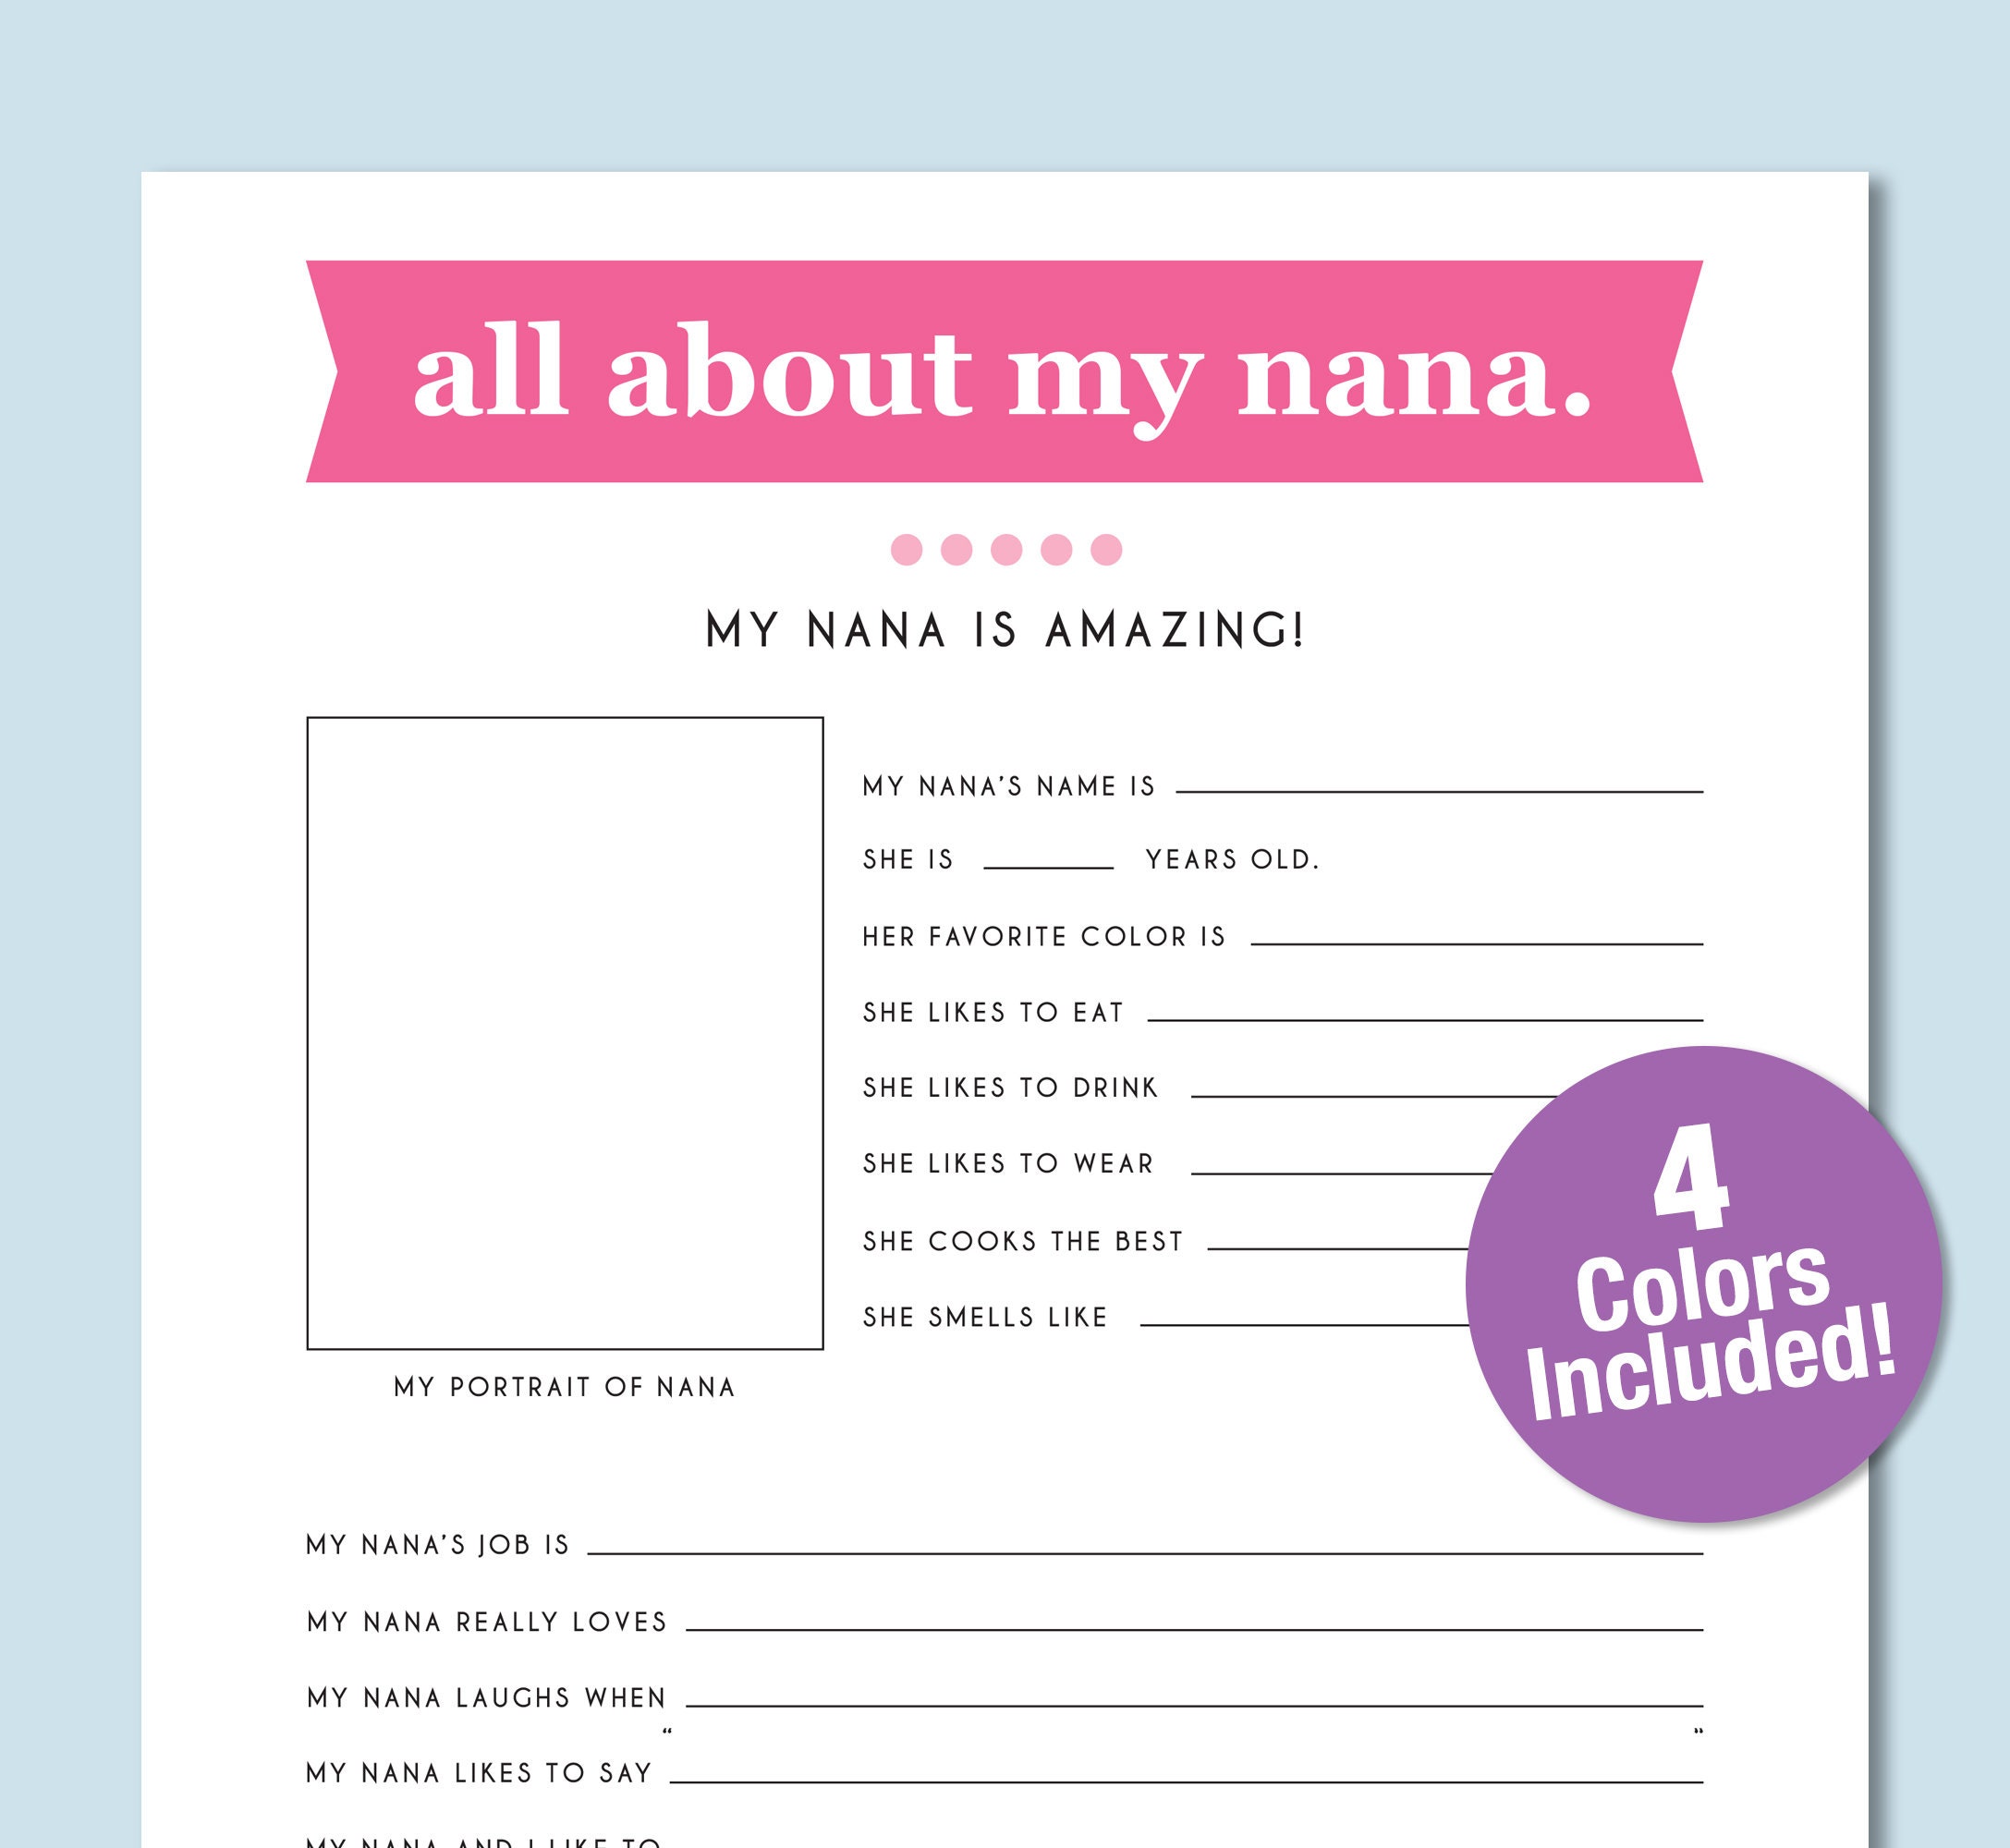 all-about-my-nana-kid-s-worksheet-grandma-birthday-etsy